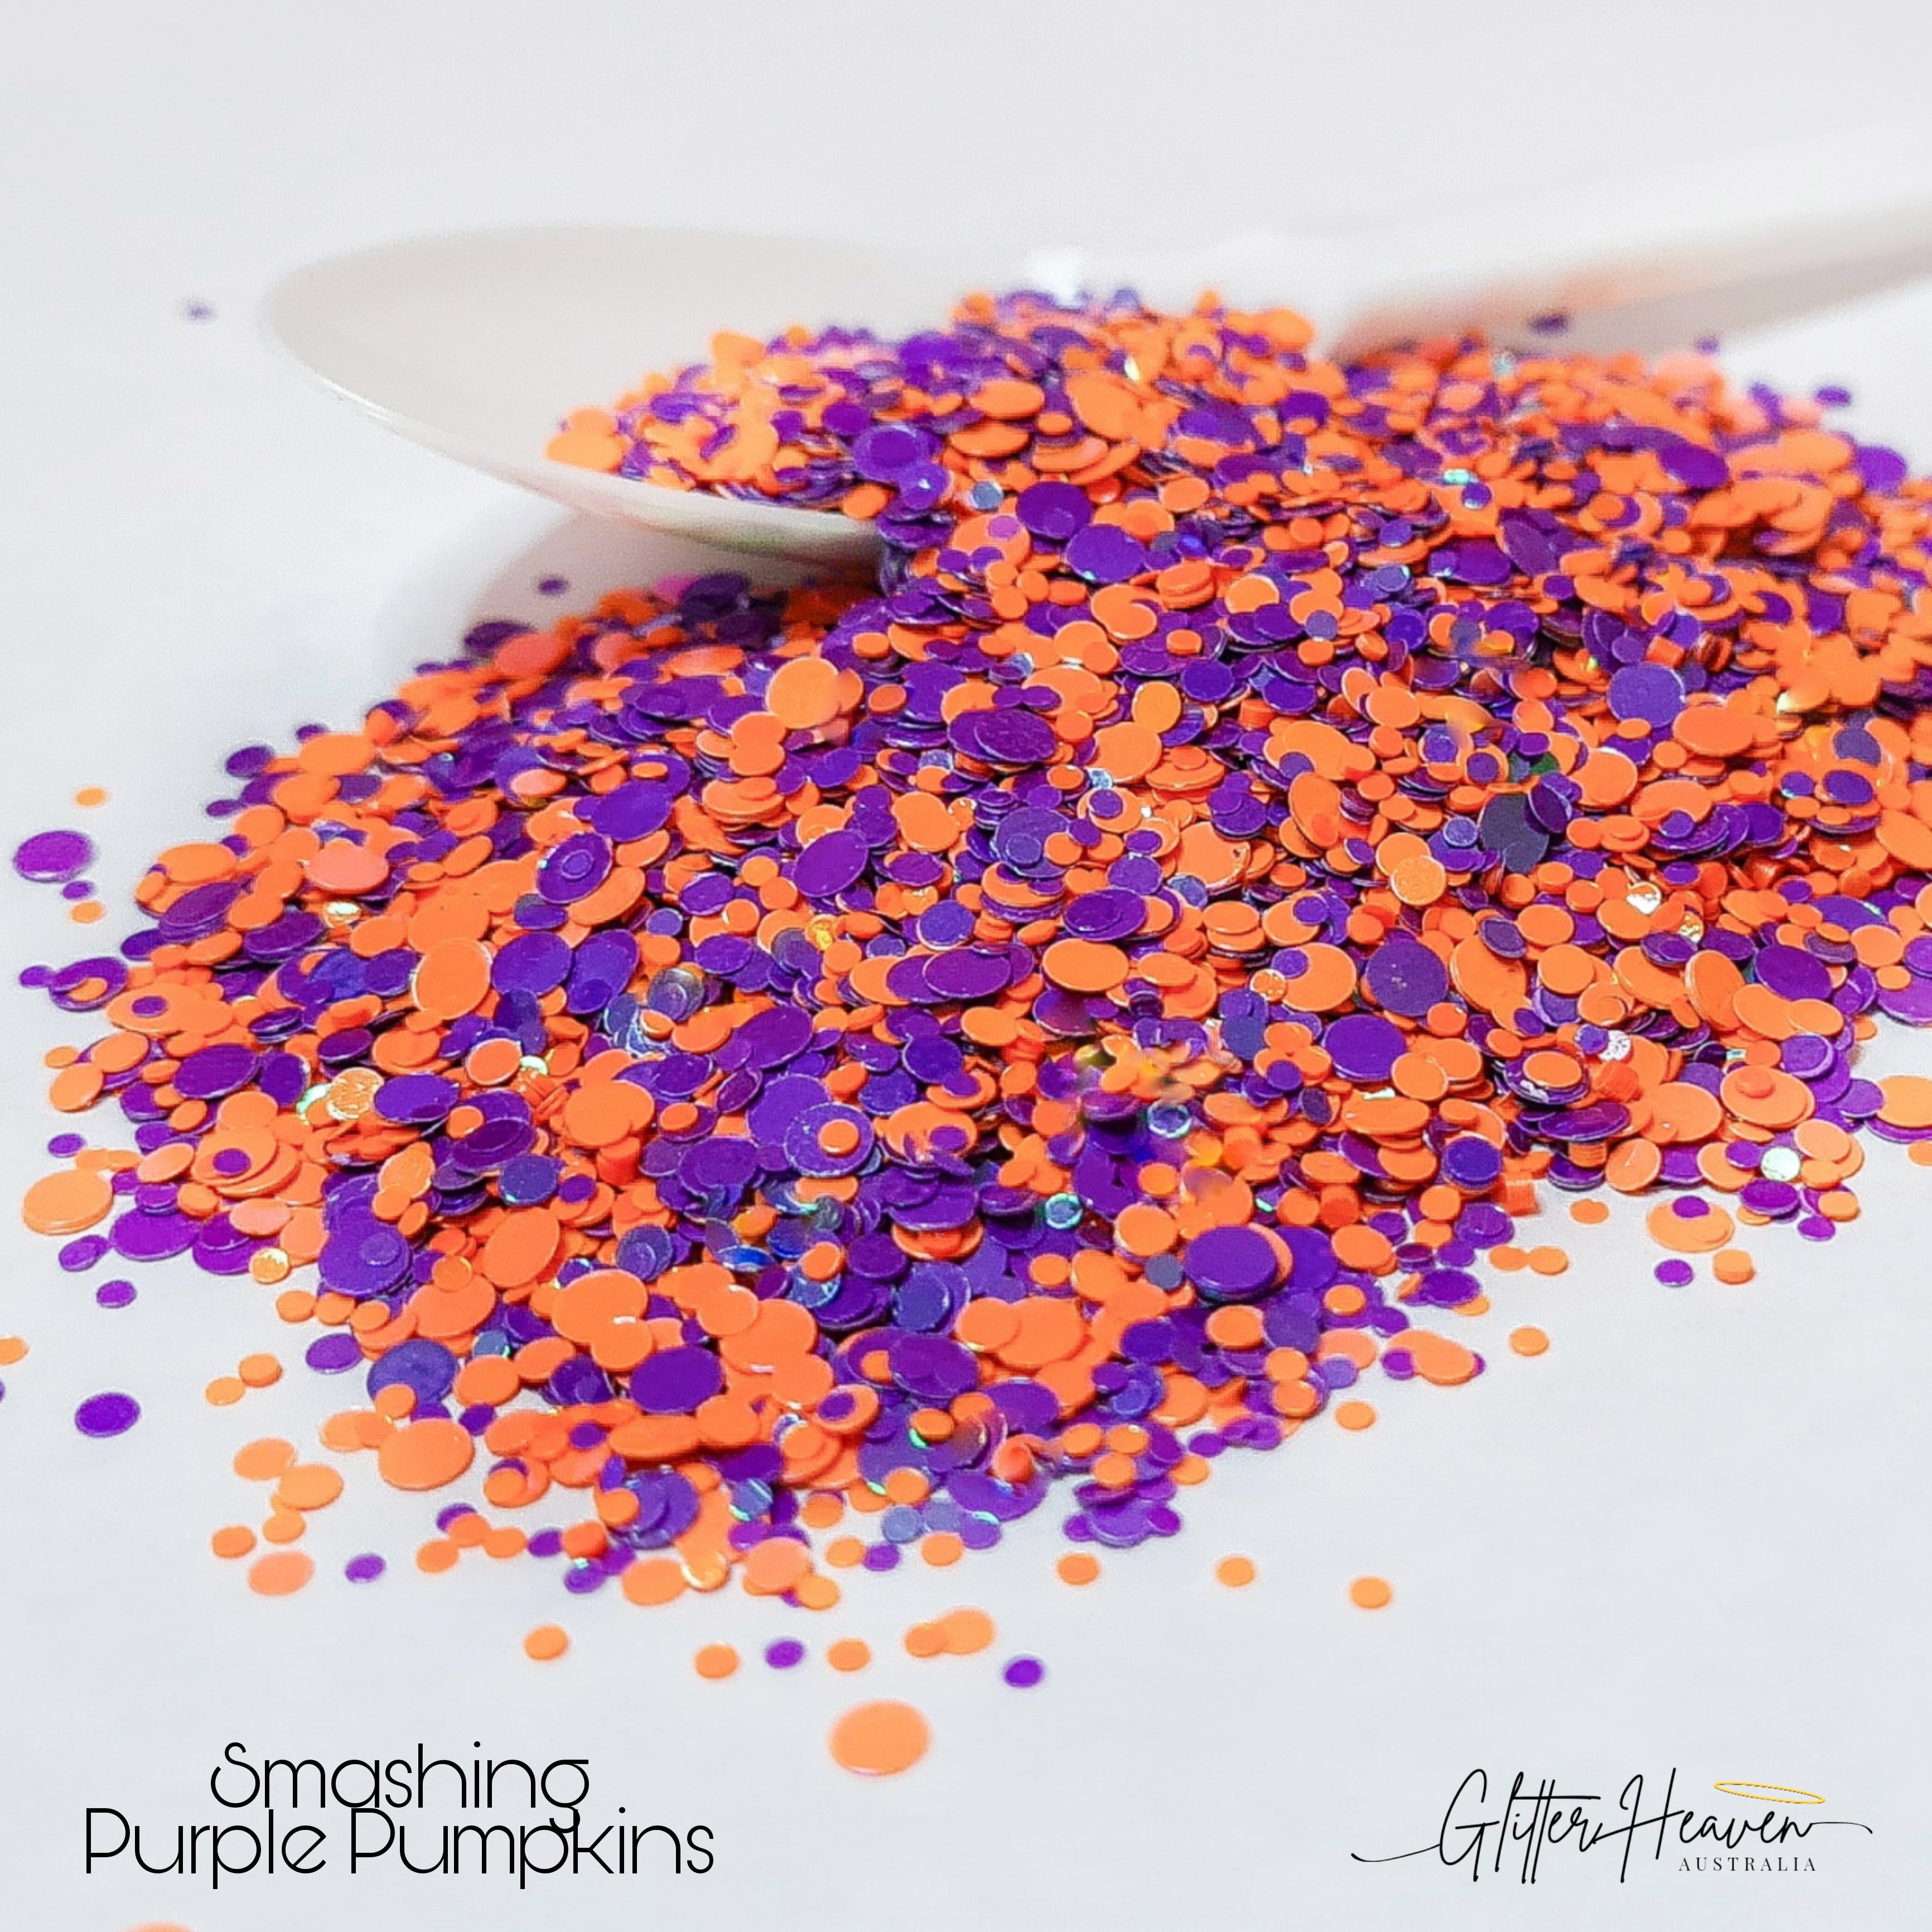 Smashing Purple Pumpkins